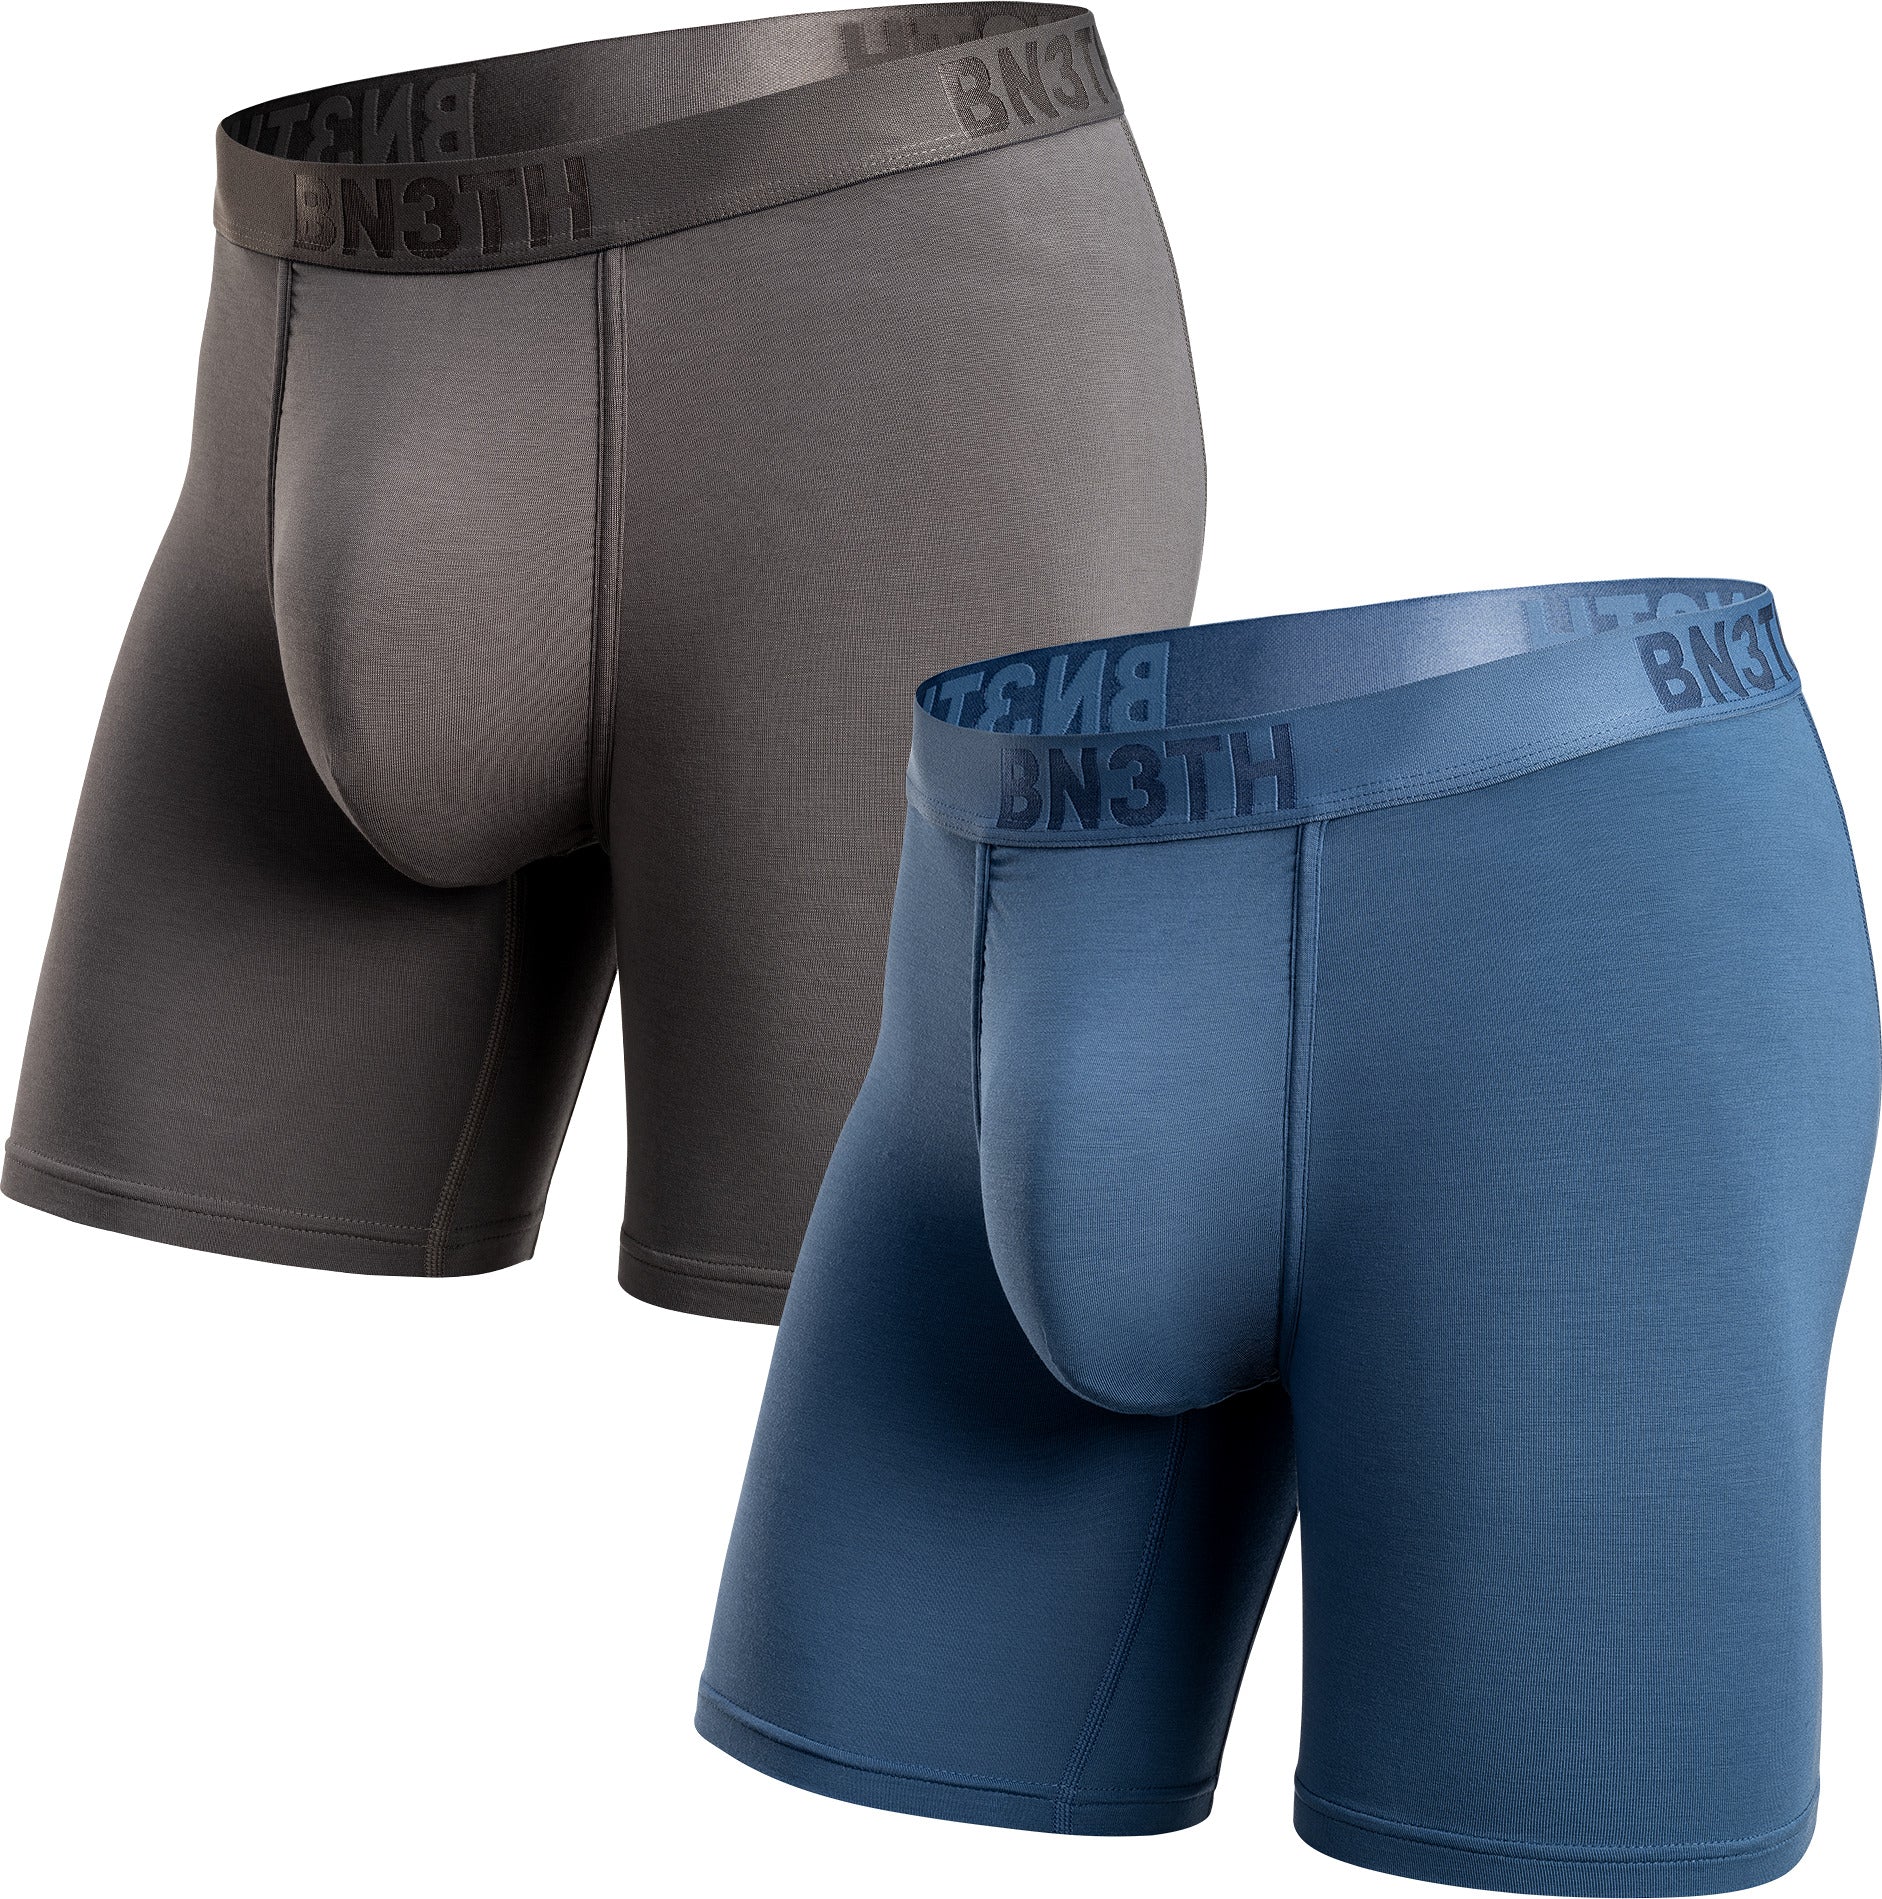 MyPakage – My Mans New Favourite Underwear + Underwear Giveaway